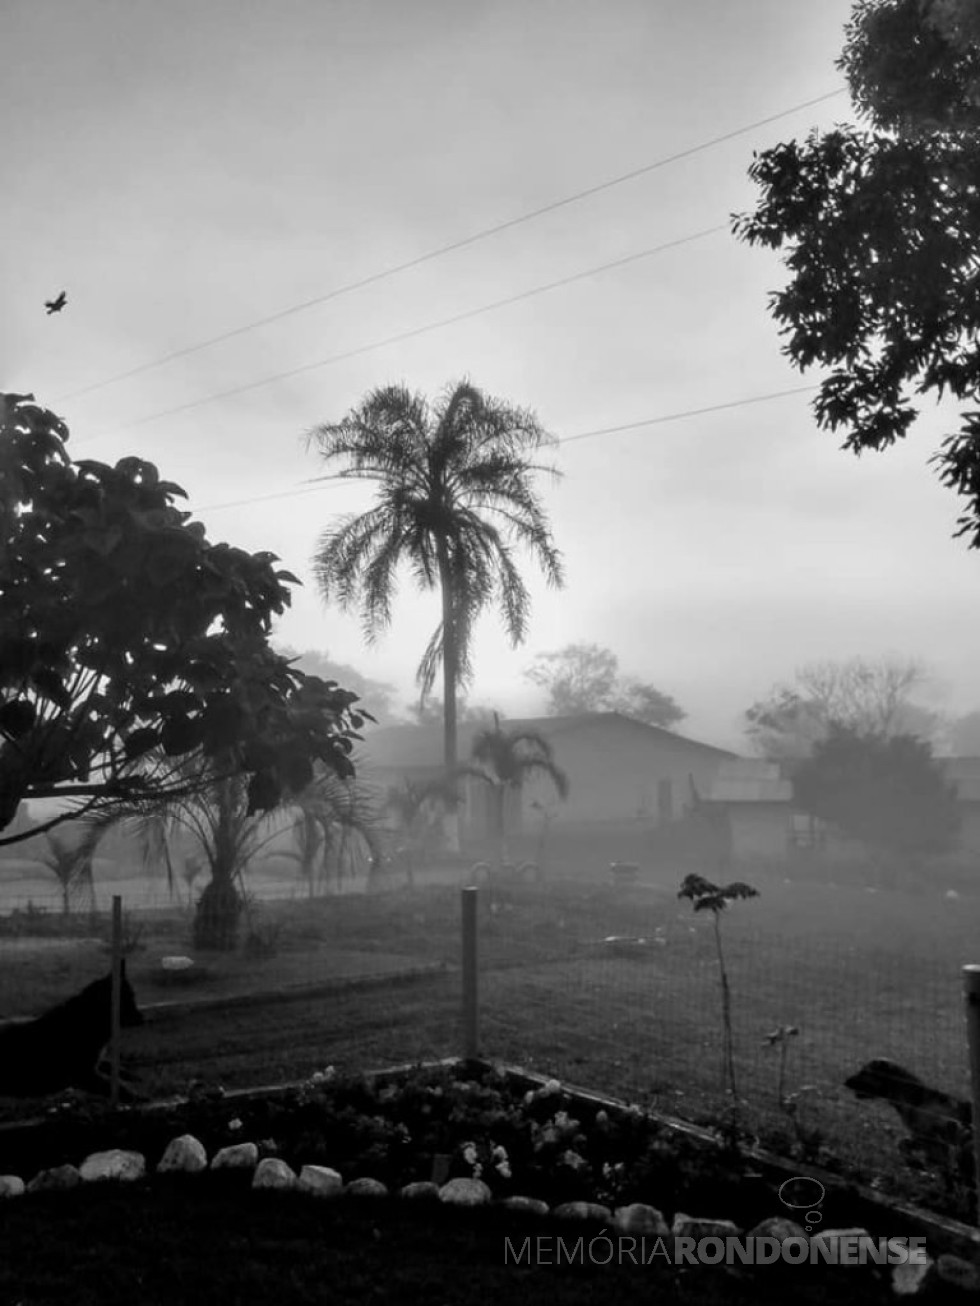 Neblina no amanhecer em Marechal Cândido Rondon no dia 16 de junho de 2021, na proriedade do casal Roselena Zimmermann e Semildo Laske.
Imagem: Acervo e crédito de Roselene Zimmermann Laske - FOTO 7 -